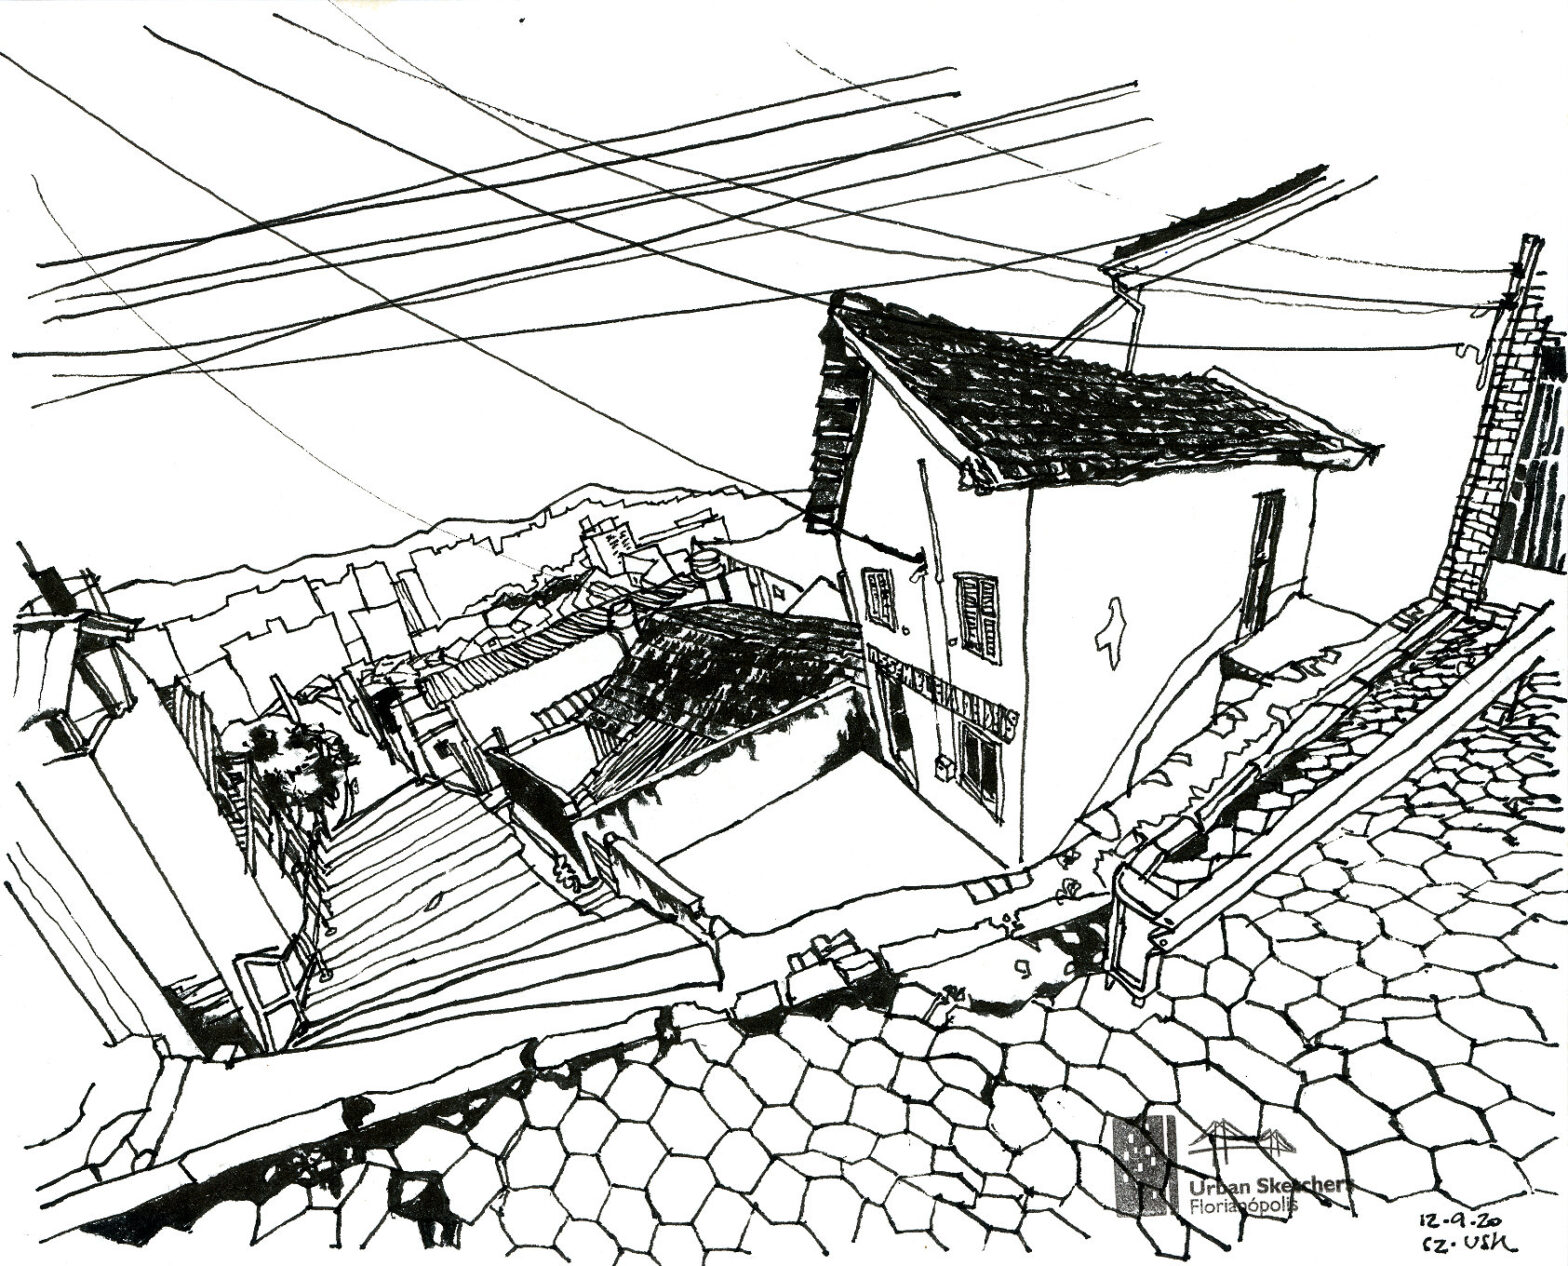 Desenho a traço da escadaria do Morro da Mariquinha vista a partir de cima com casas ao lado e rua de lajota em primeiro plano